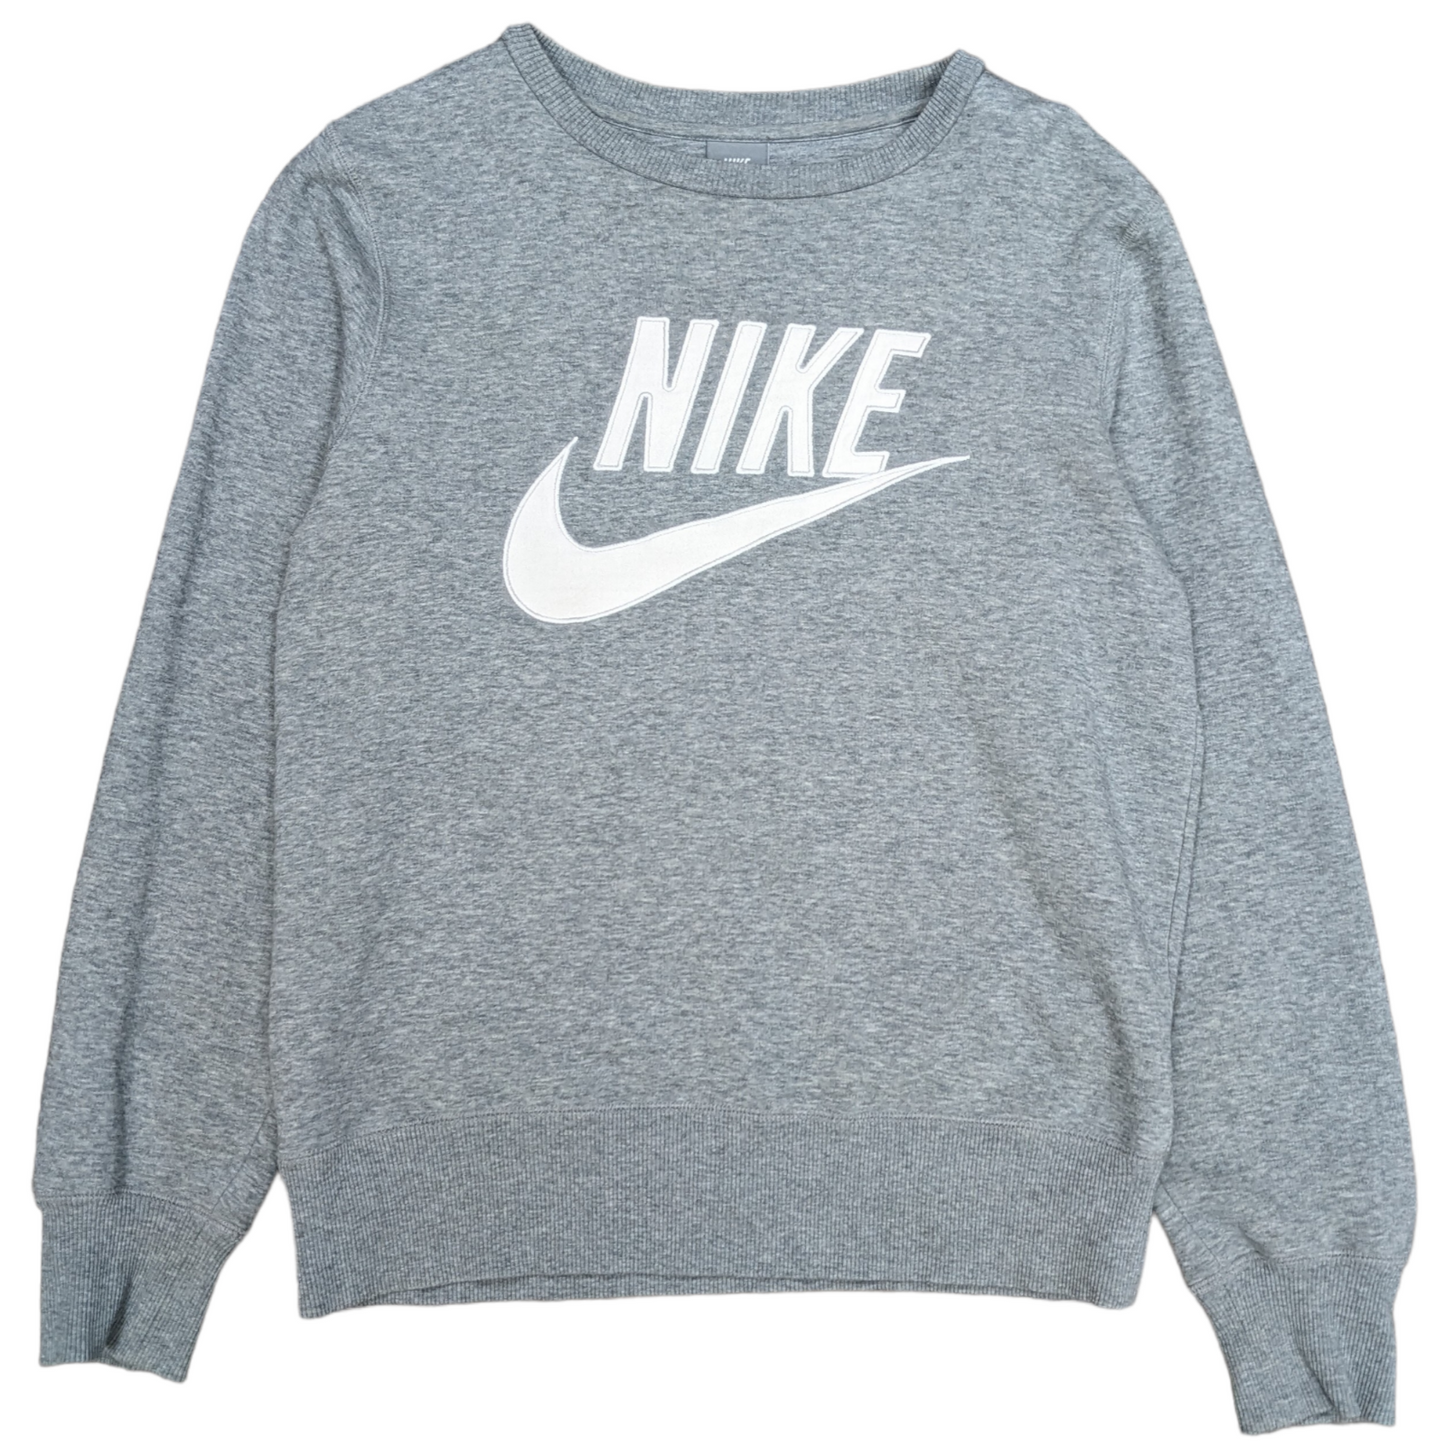 00s Nike Sweatshirt Size S